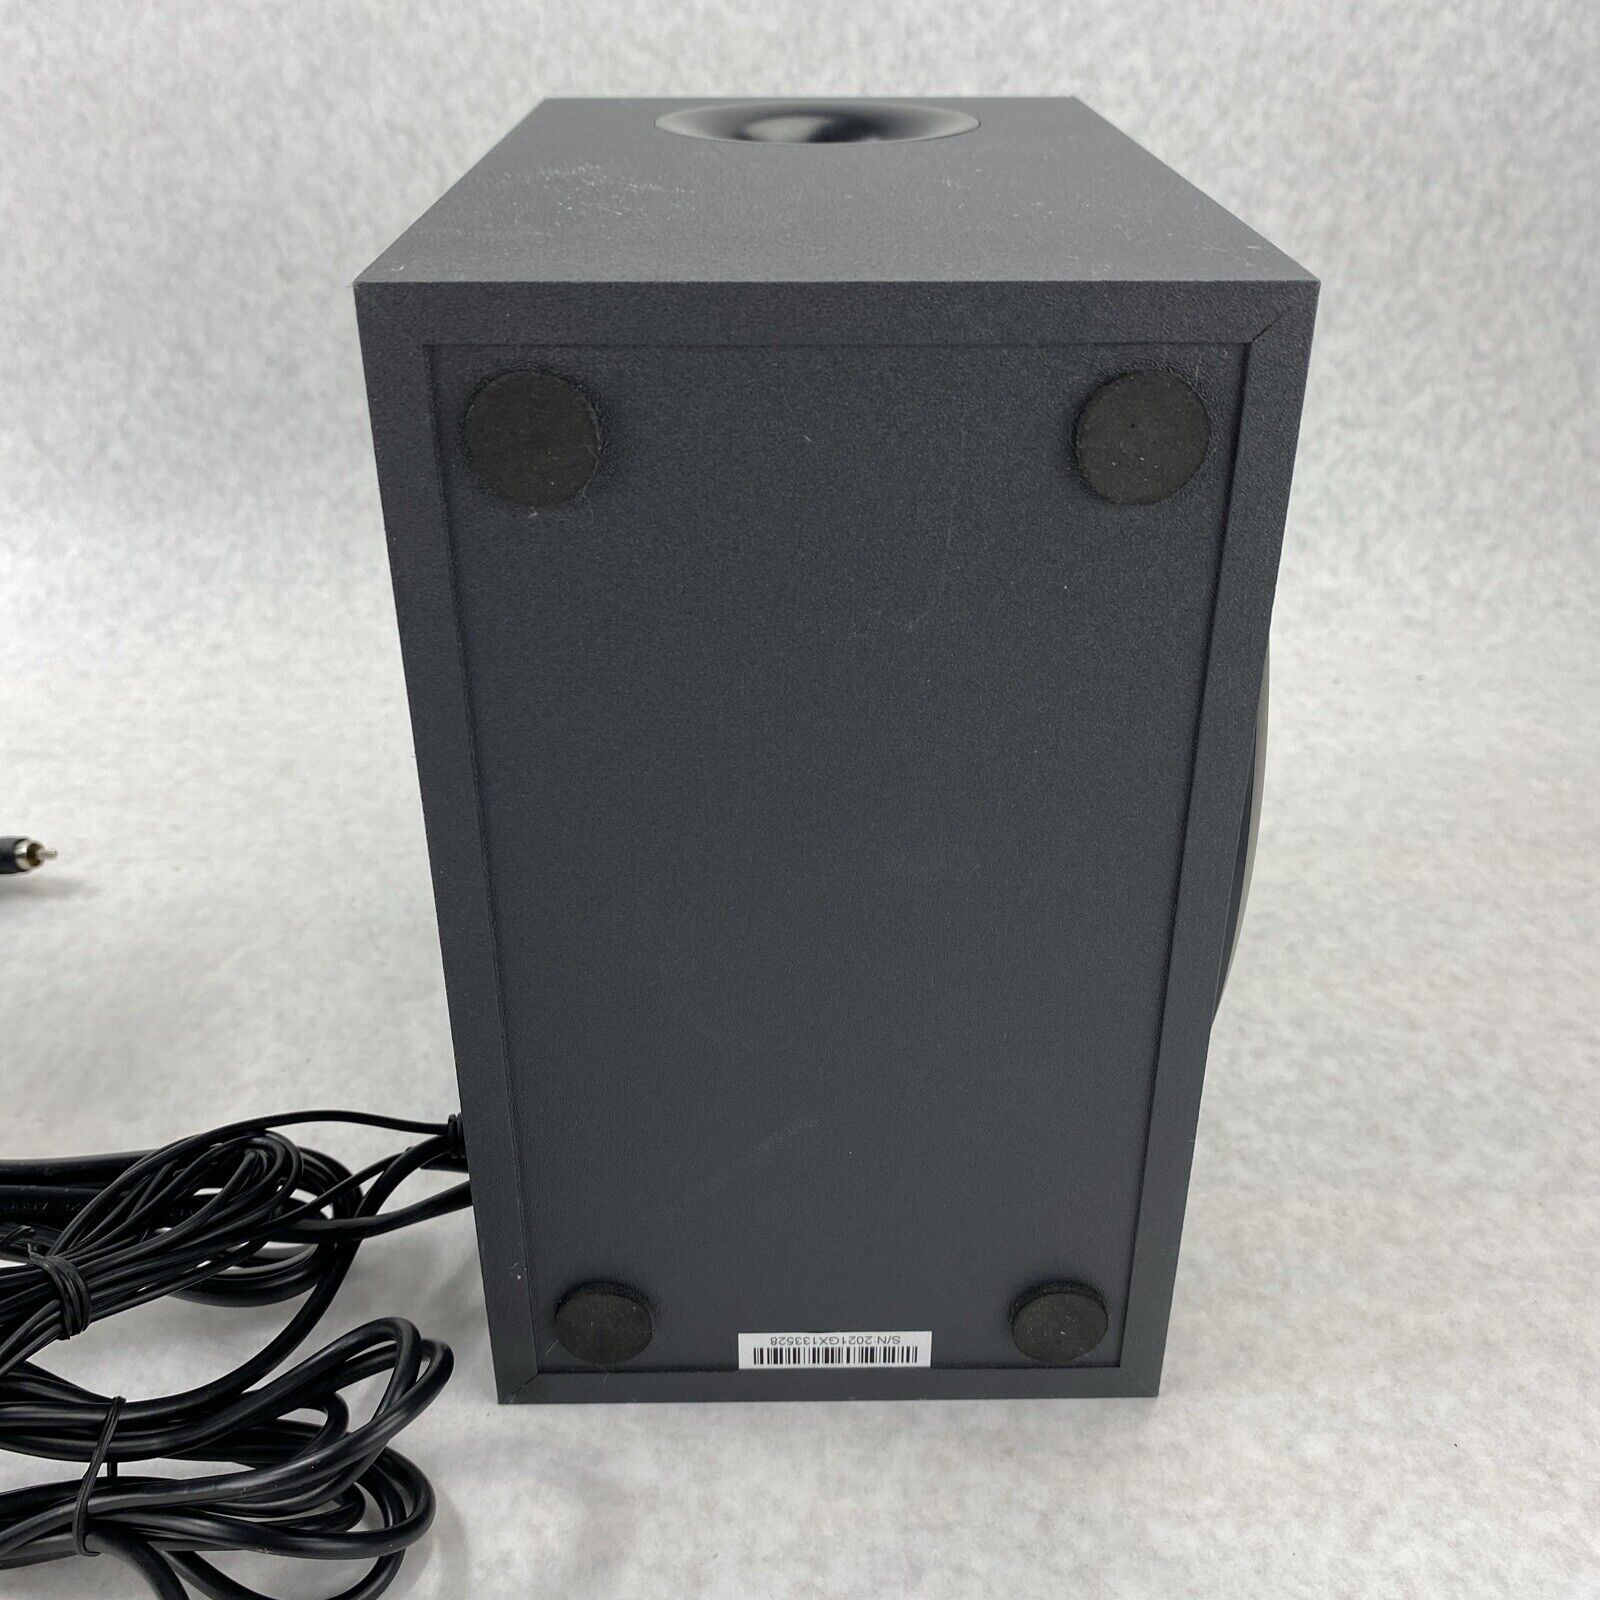 Logitech S-00154 Wired z333 Multimedia Speaker Bundle